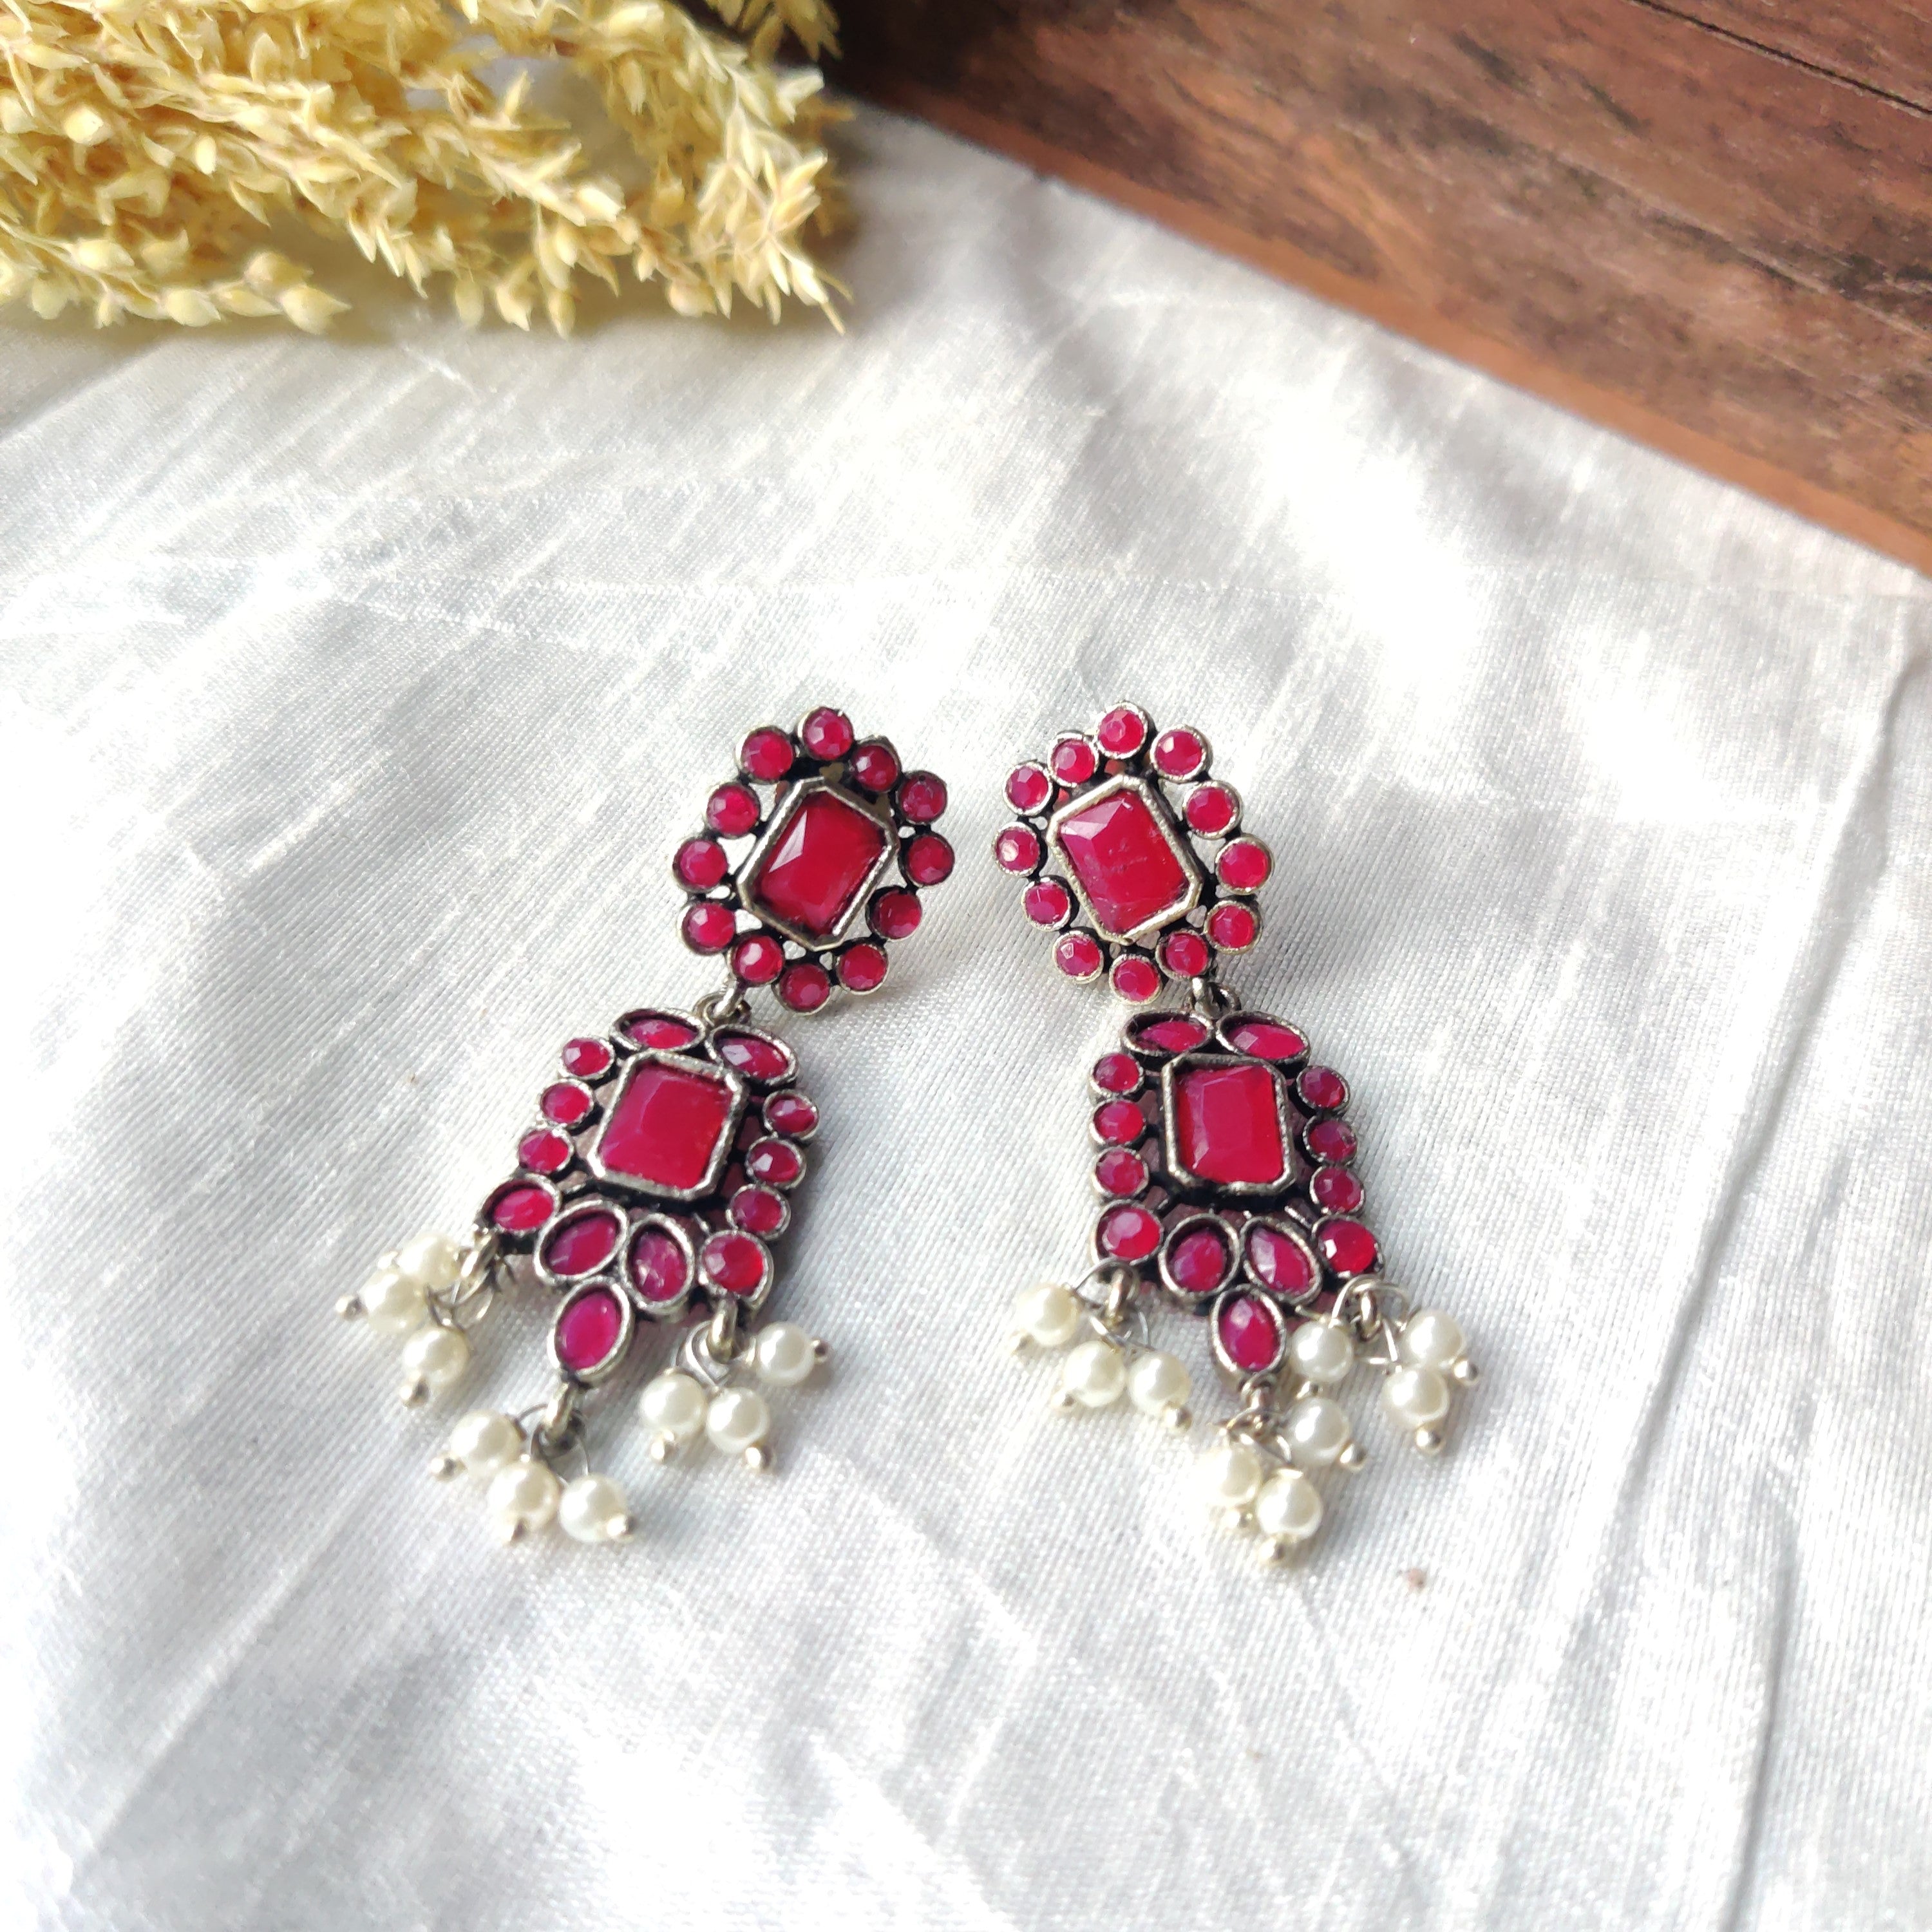 Triple layered pink drop earrings by Ammanya | The Secret Label